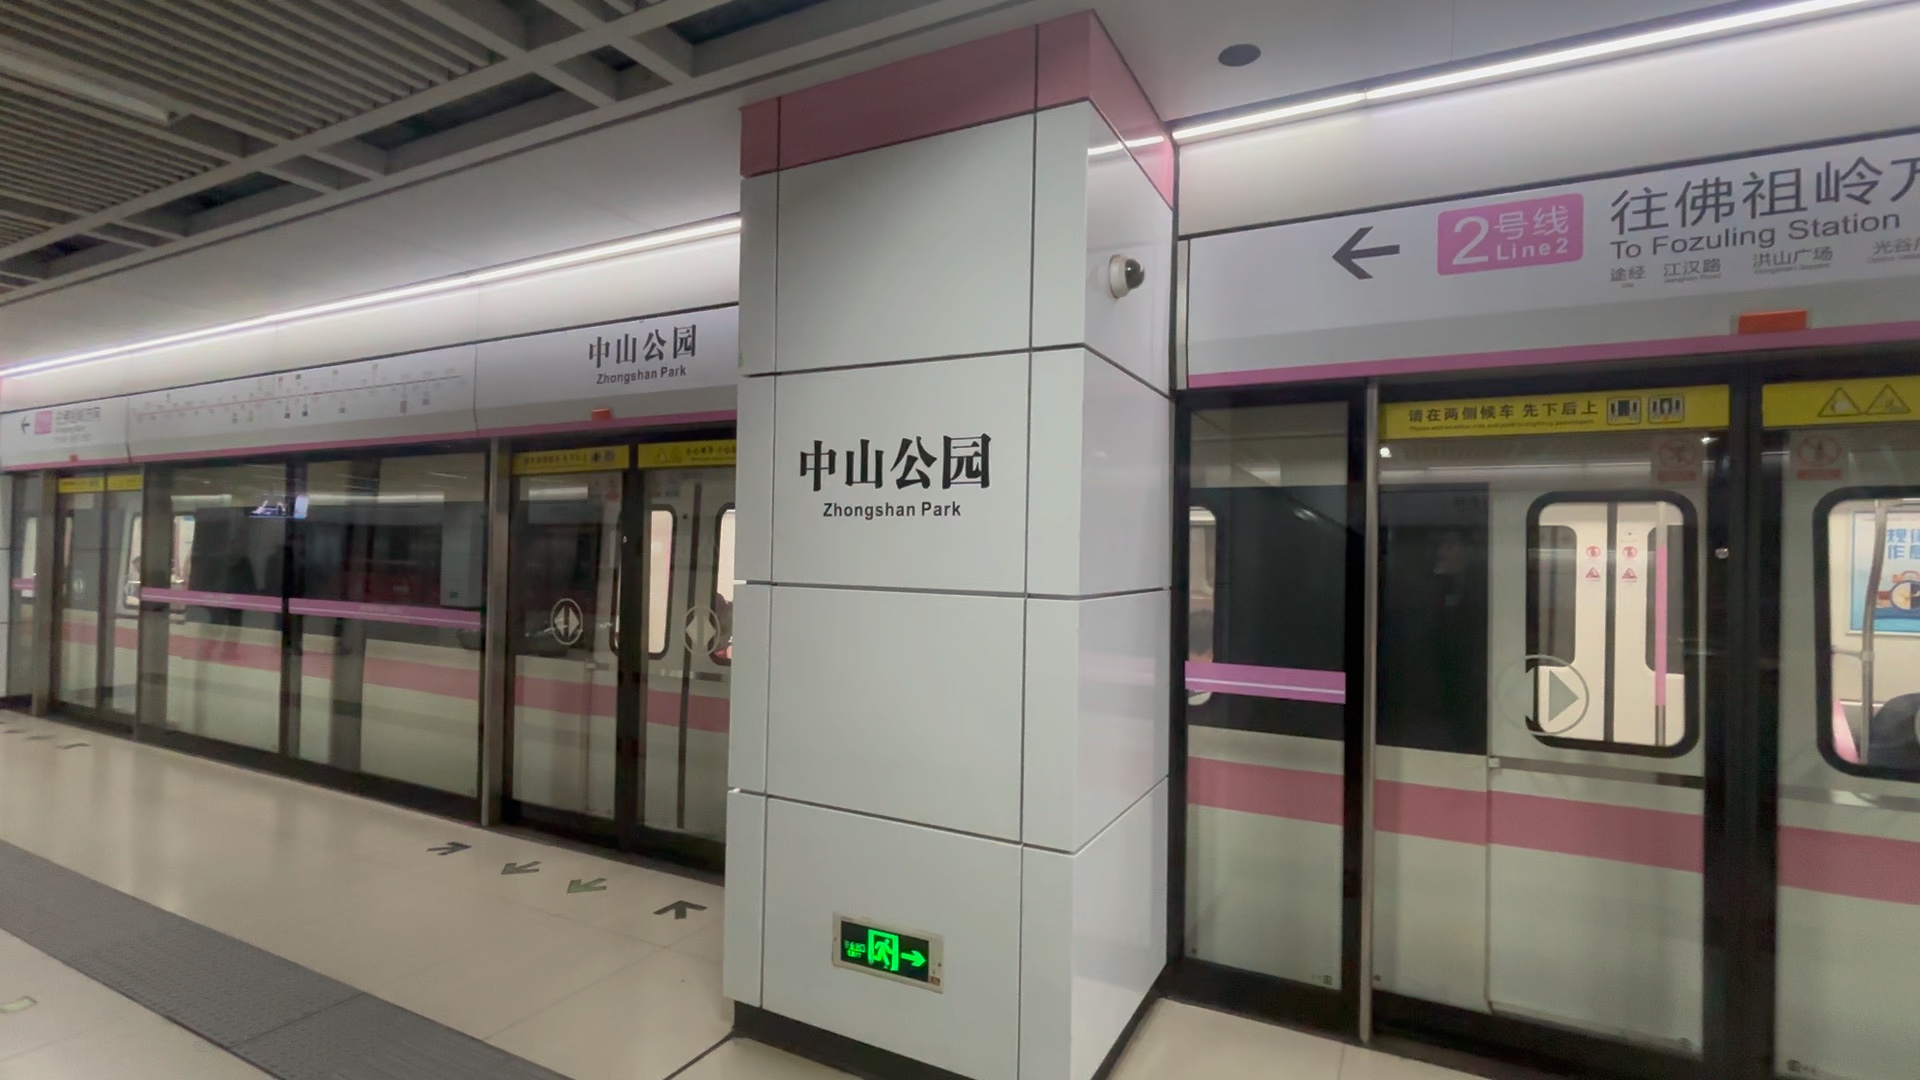 武汉地铁2号线223号车(佛祖岭方向)出中山公园站